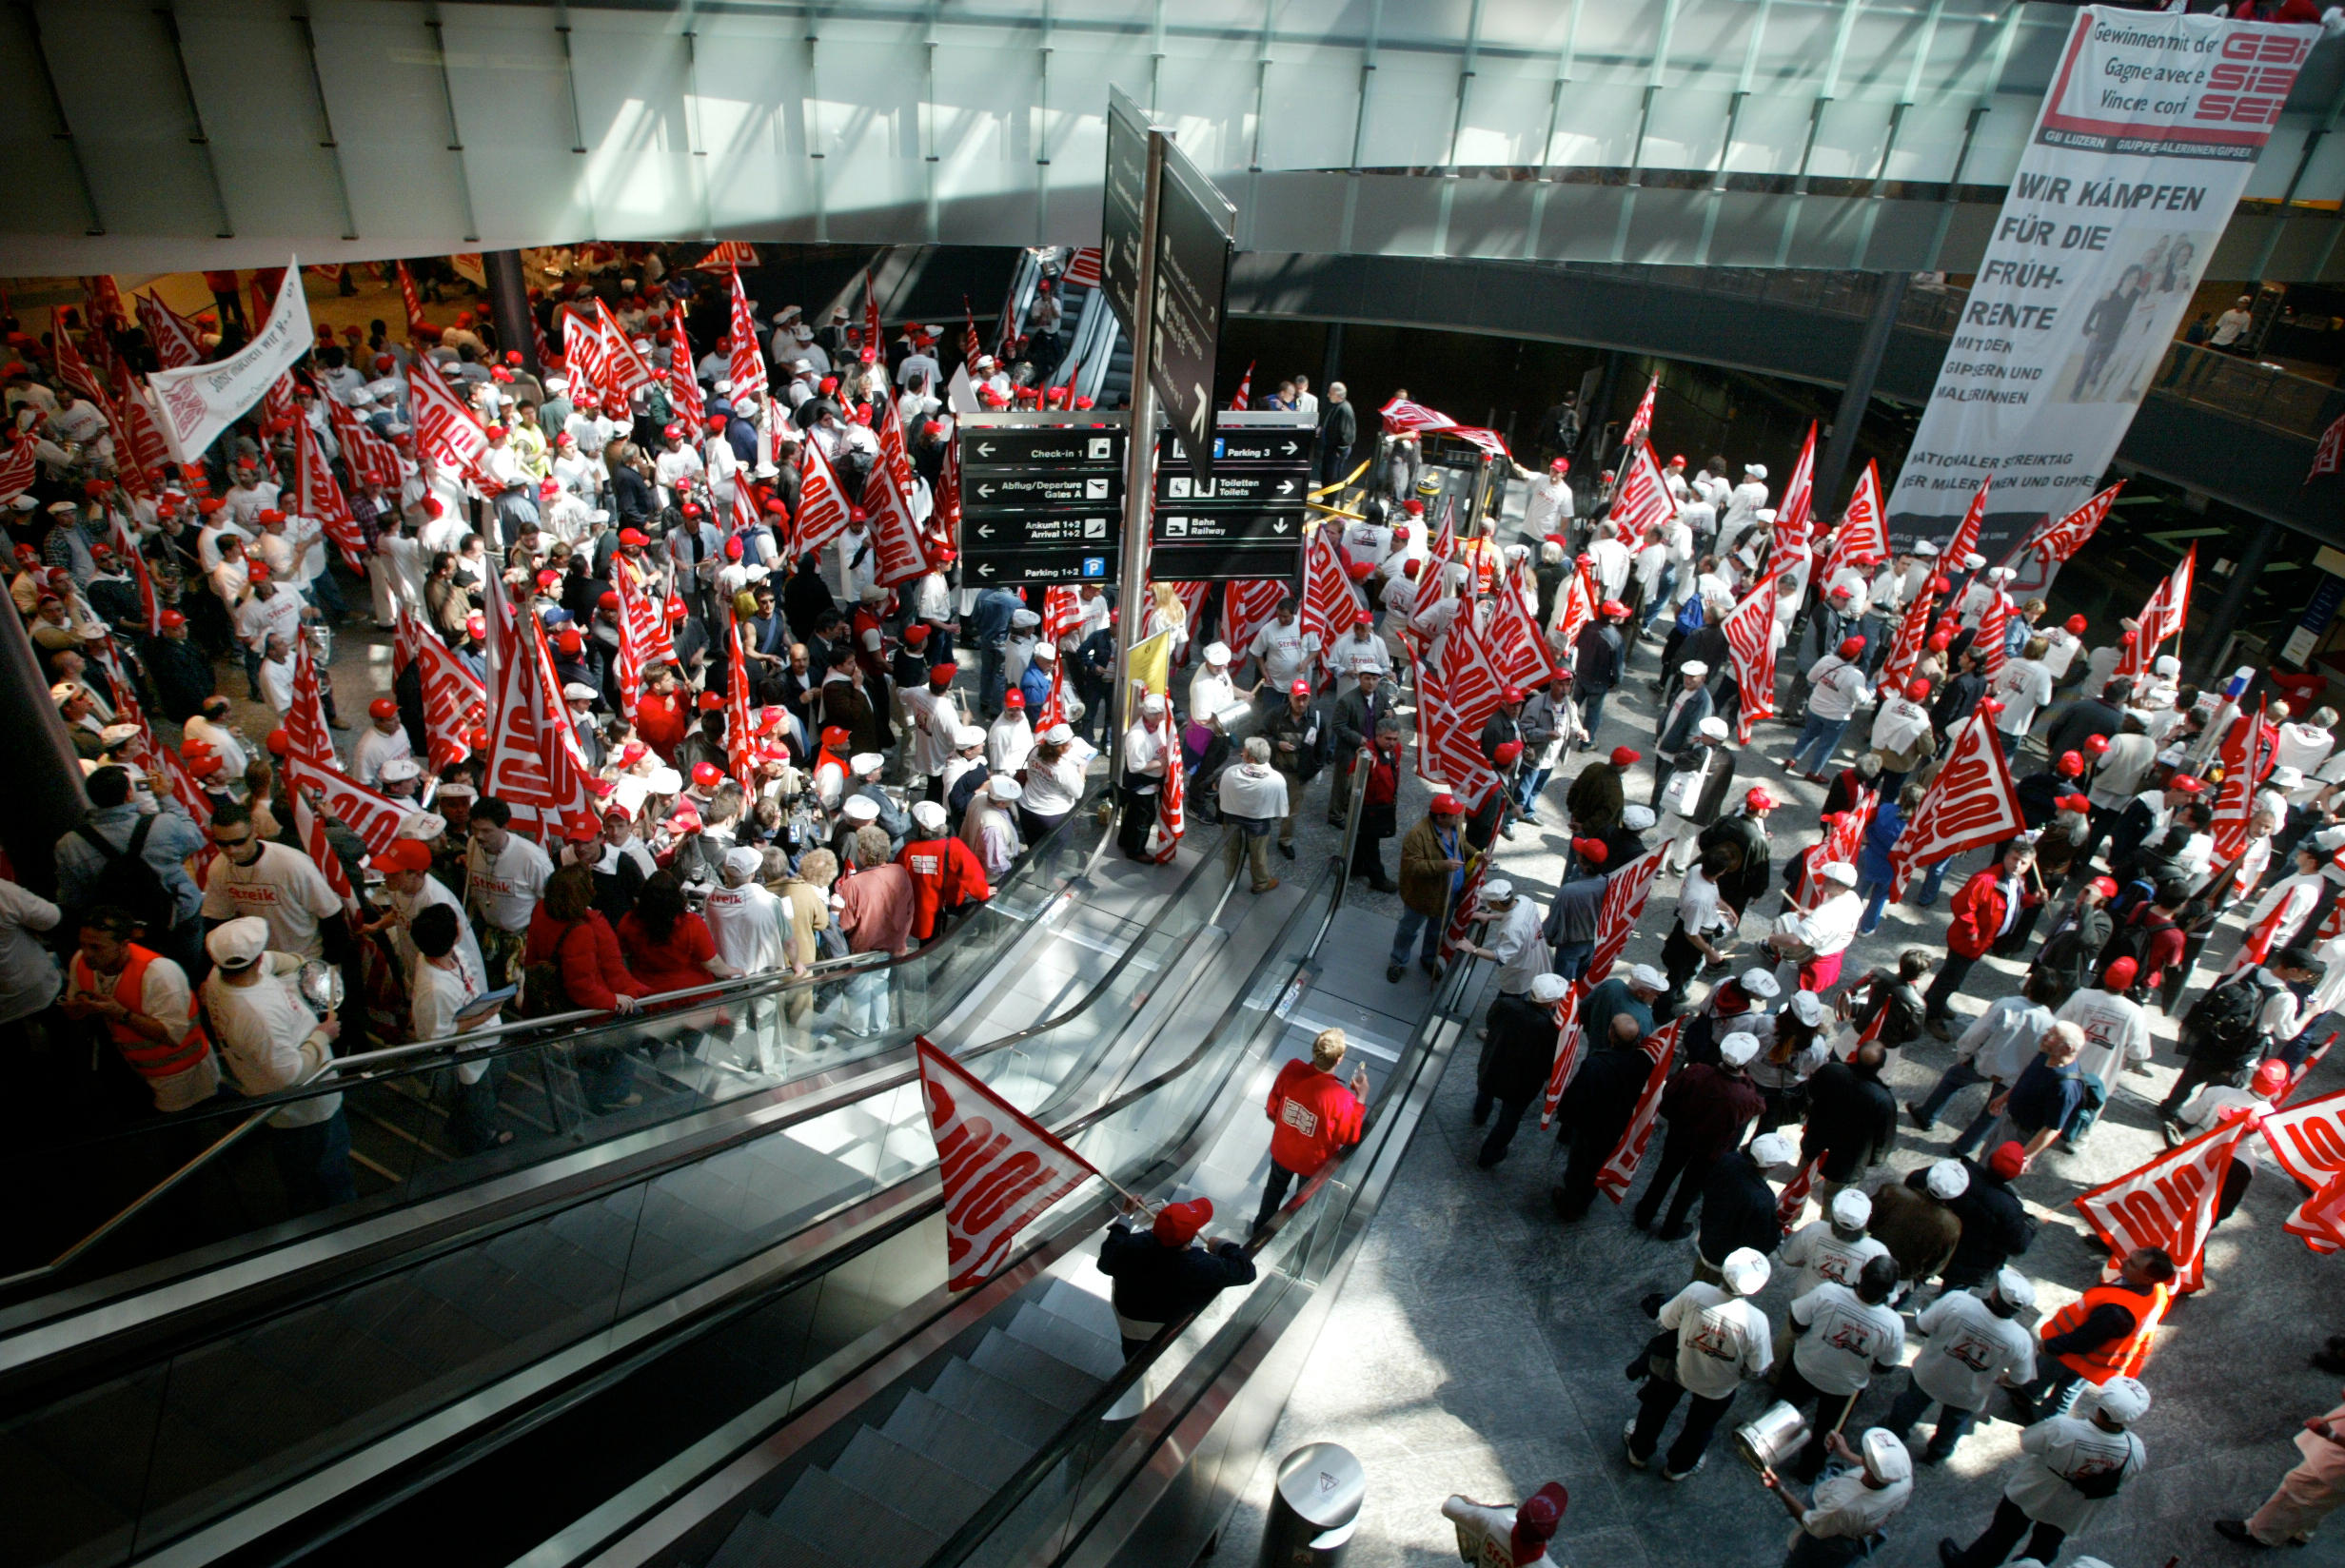 2004, pintores y yeseros estallan la huelga para exigir un regimen de jubilación anticipada